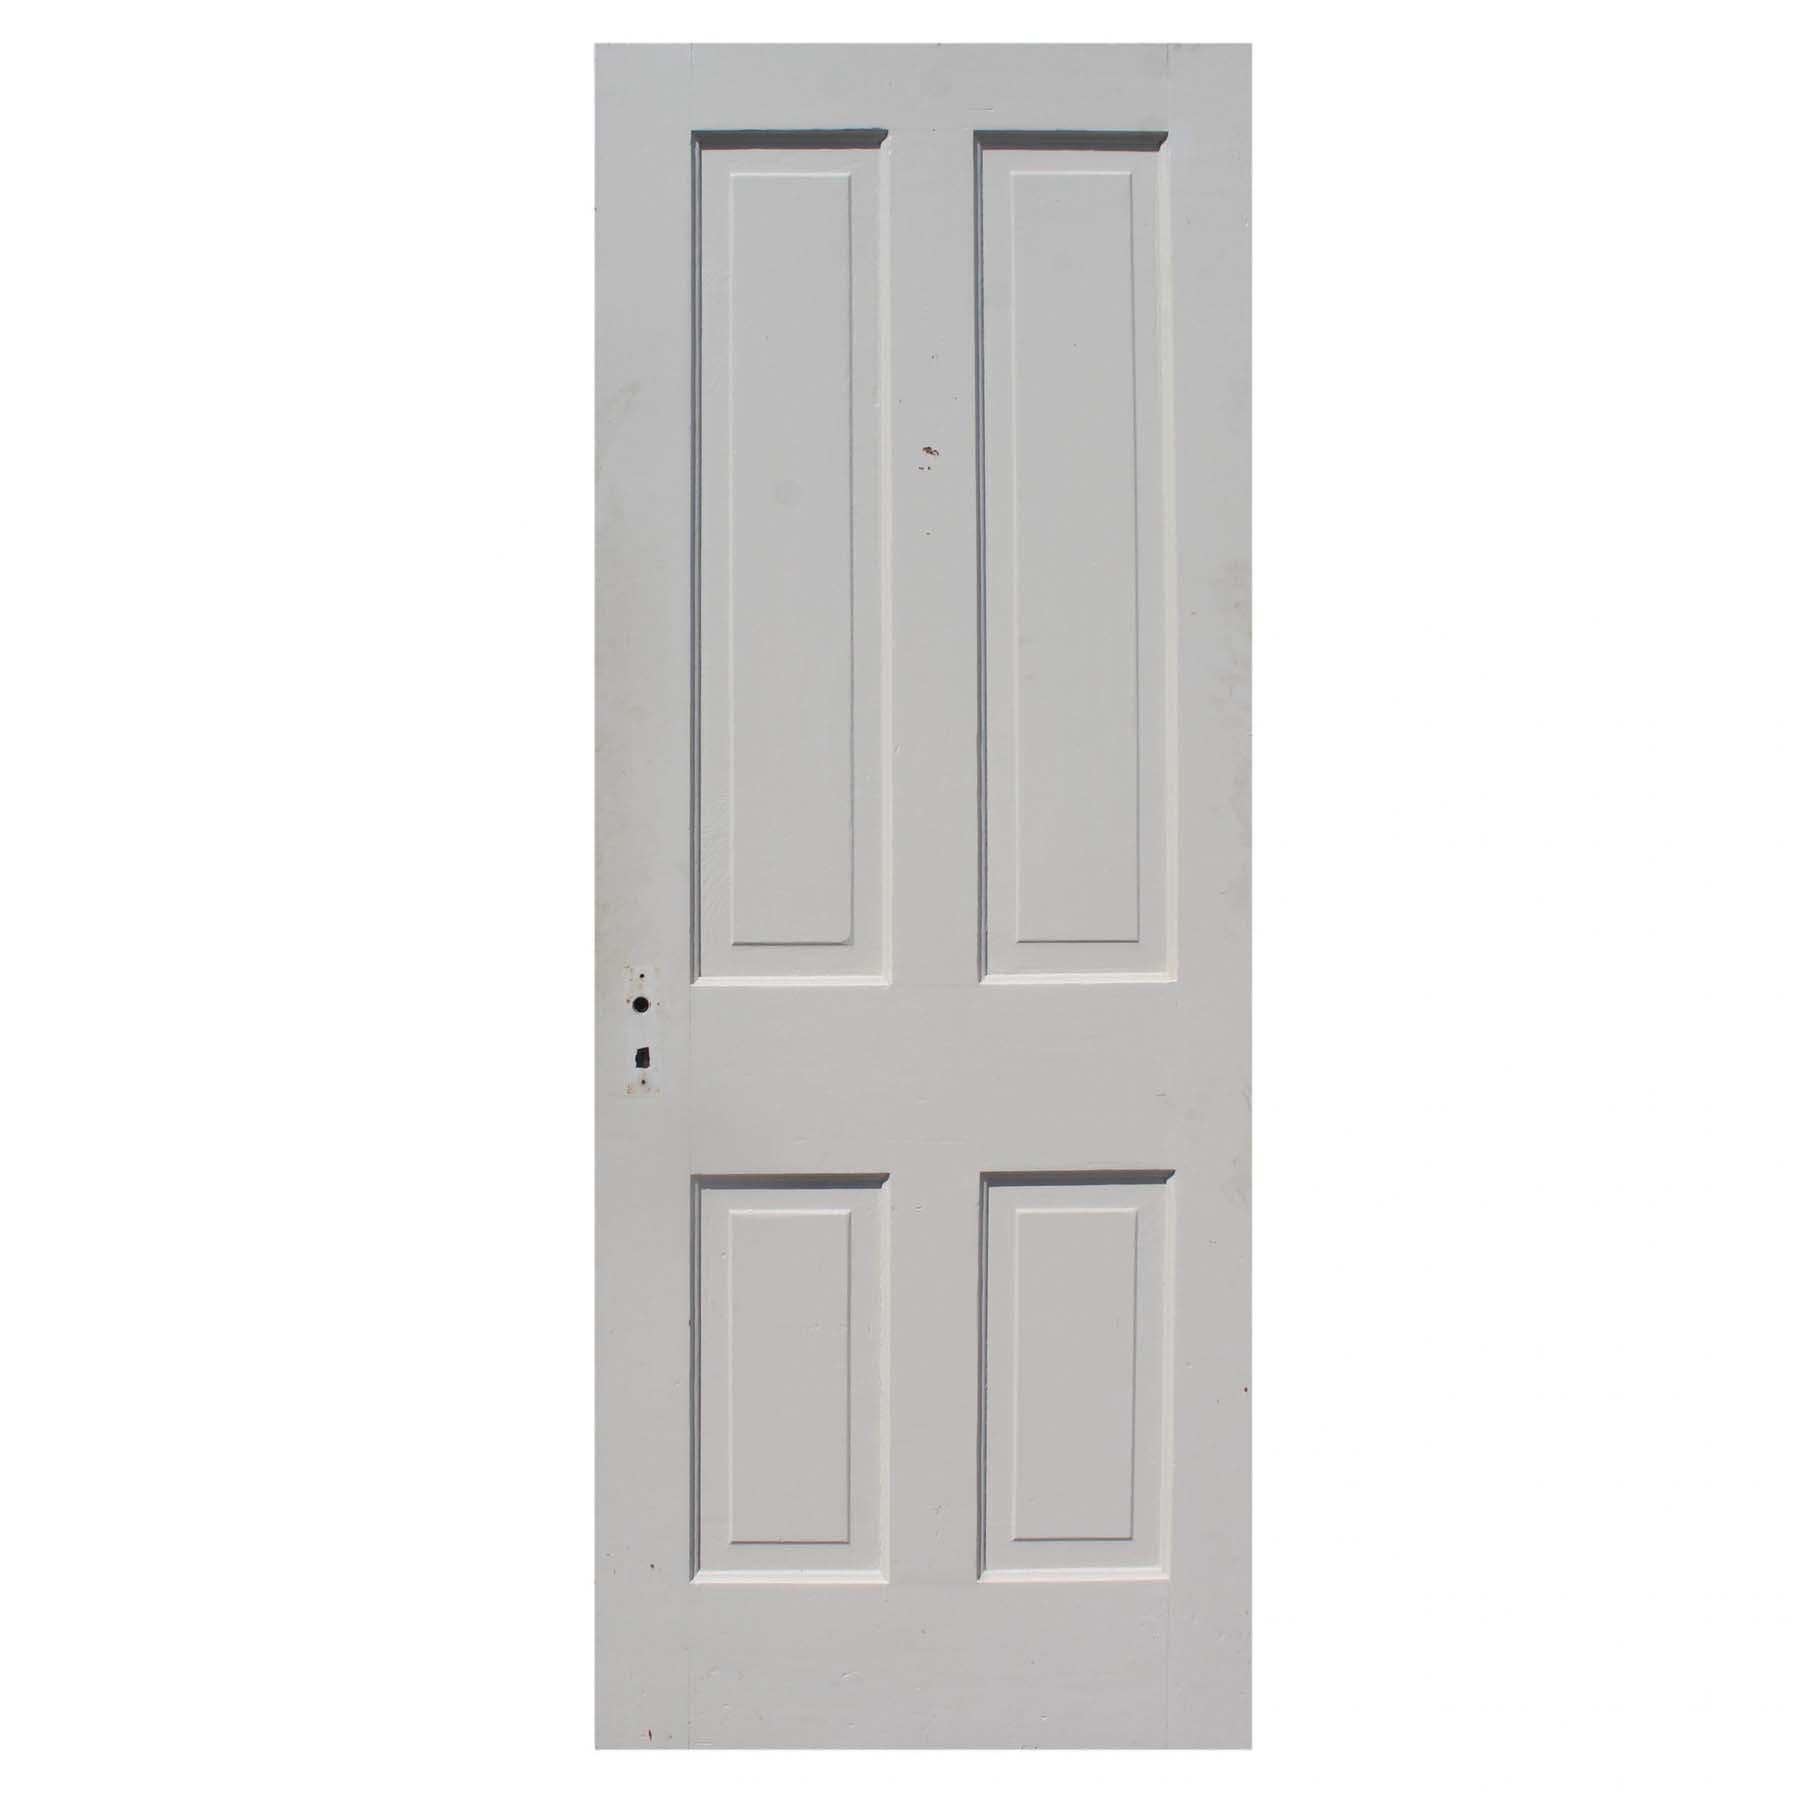 Antique 30” Four-Panel Solid Wood Door-72293